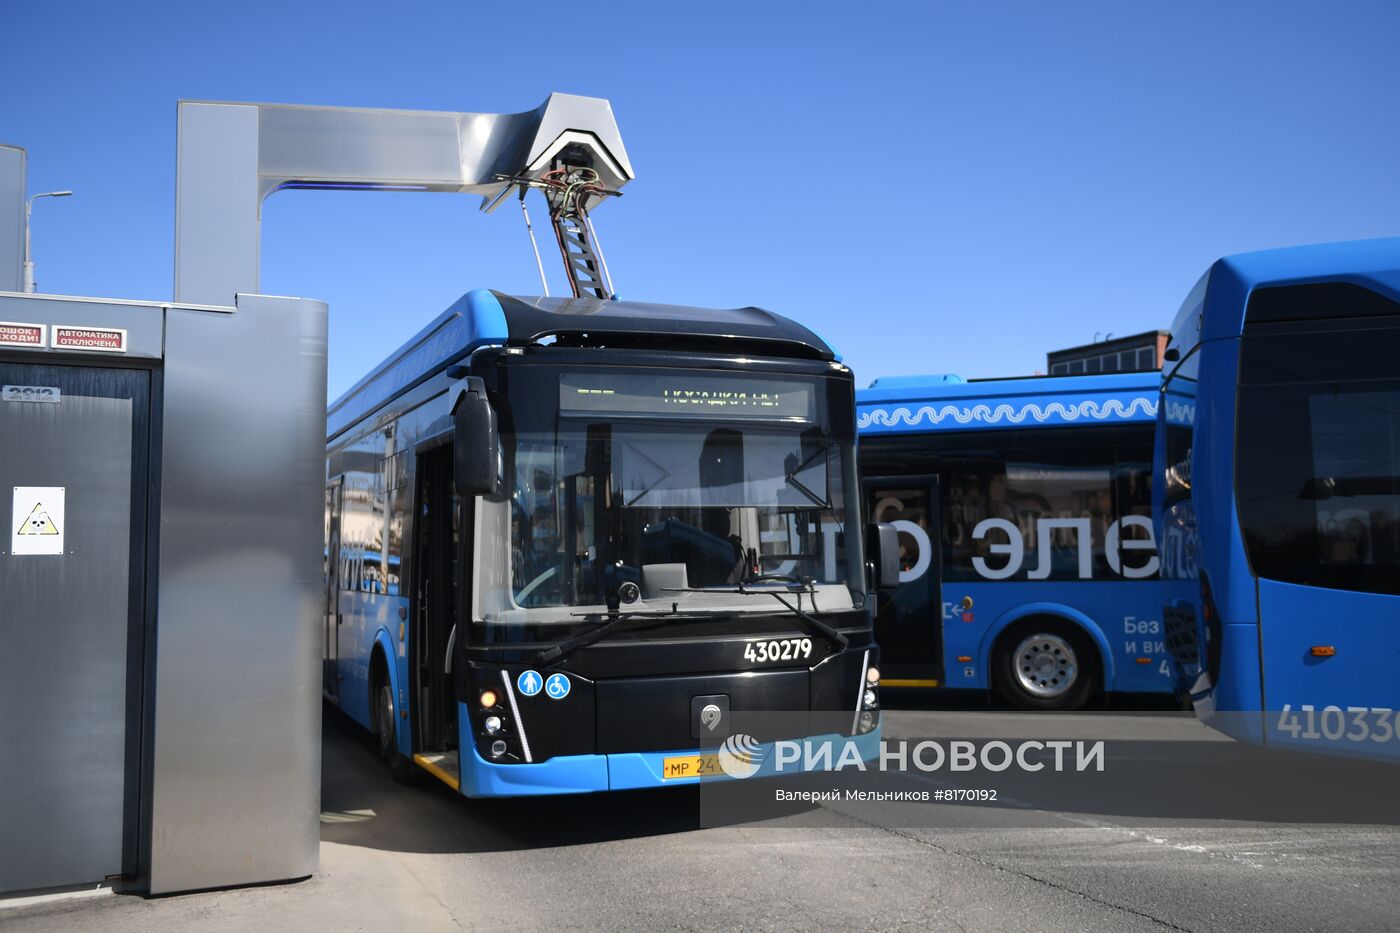 Запуск на маршрут двухсекционного электробуса в Москве